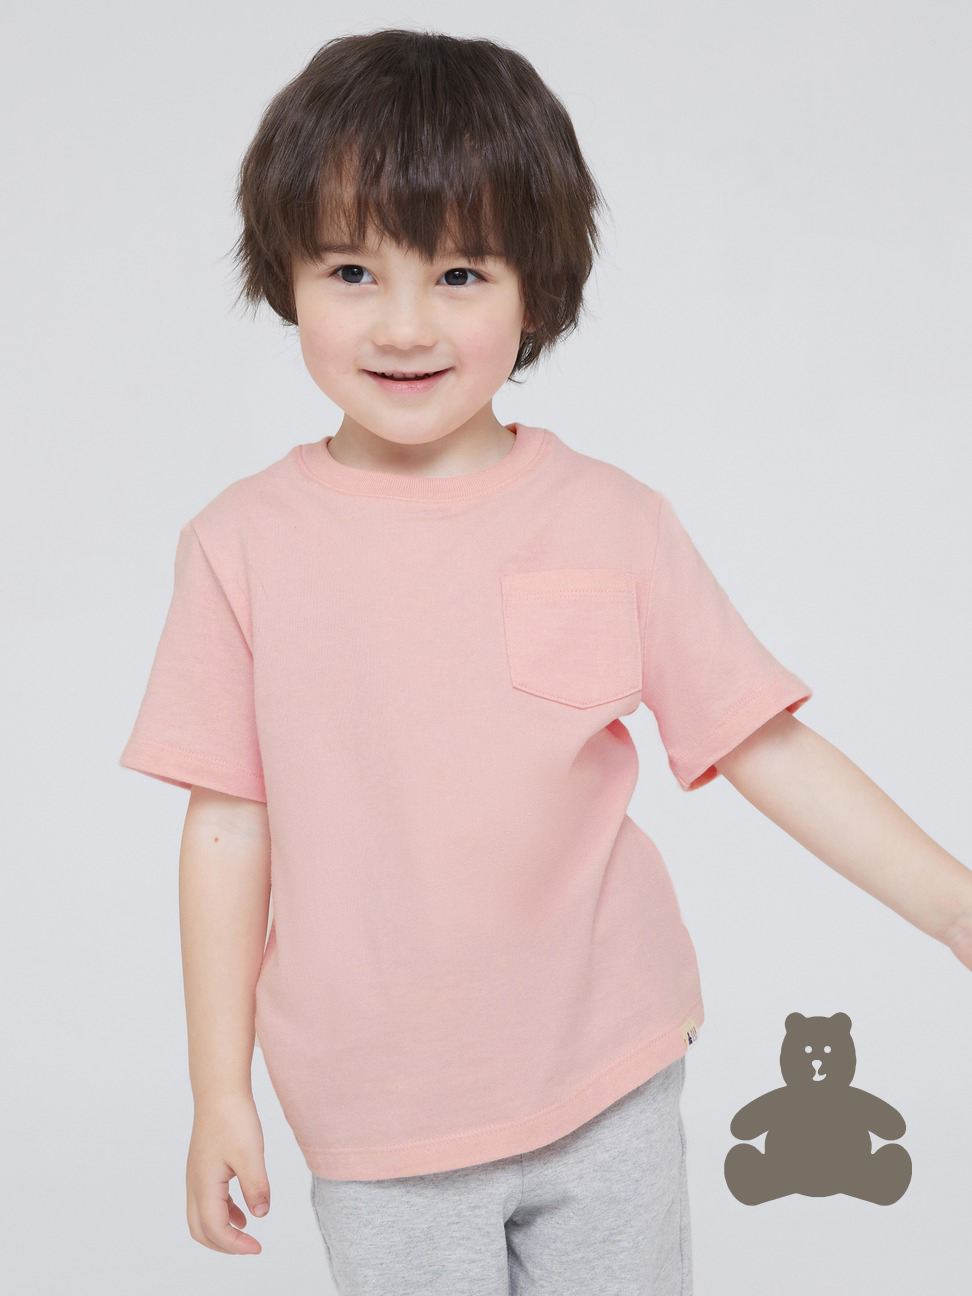 男幼童|活力純棉素色圓領短袖T恤 布萊納系列-淡粉色